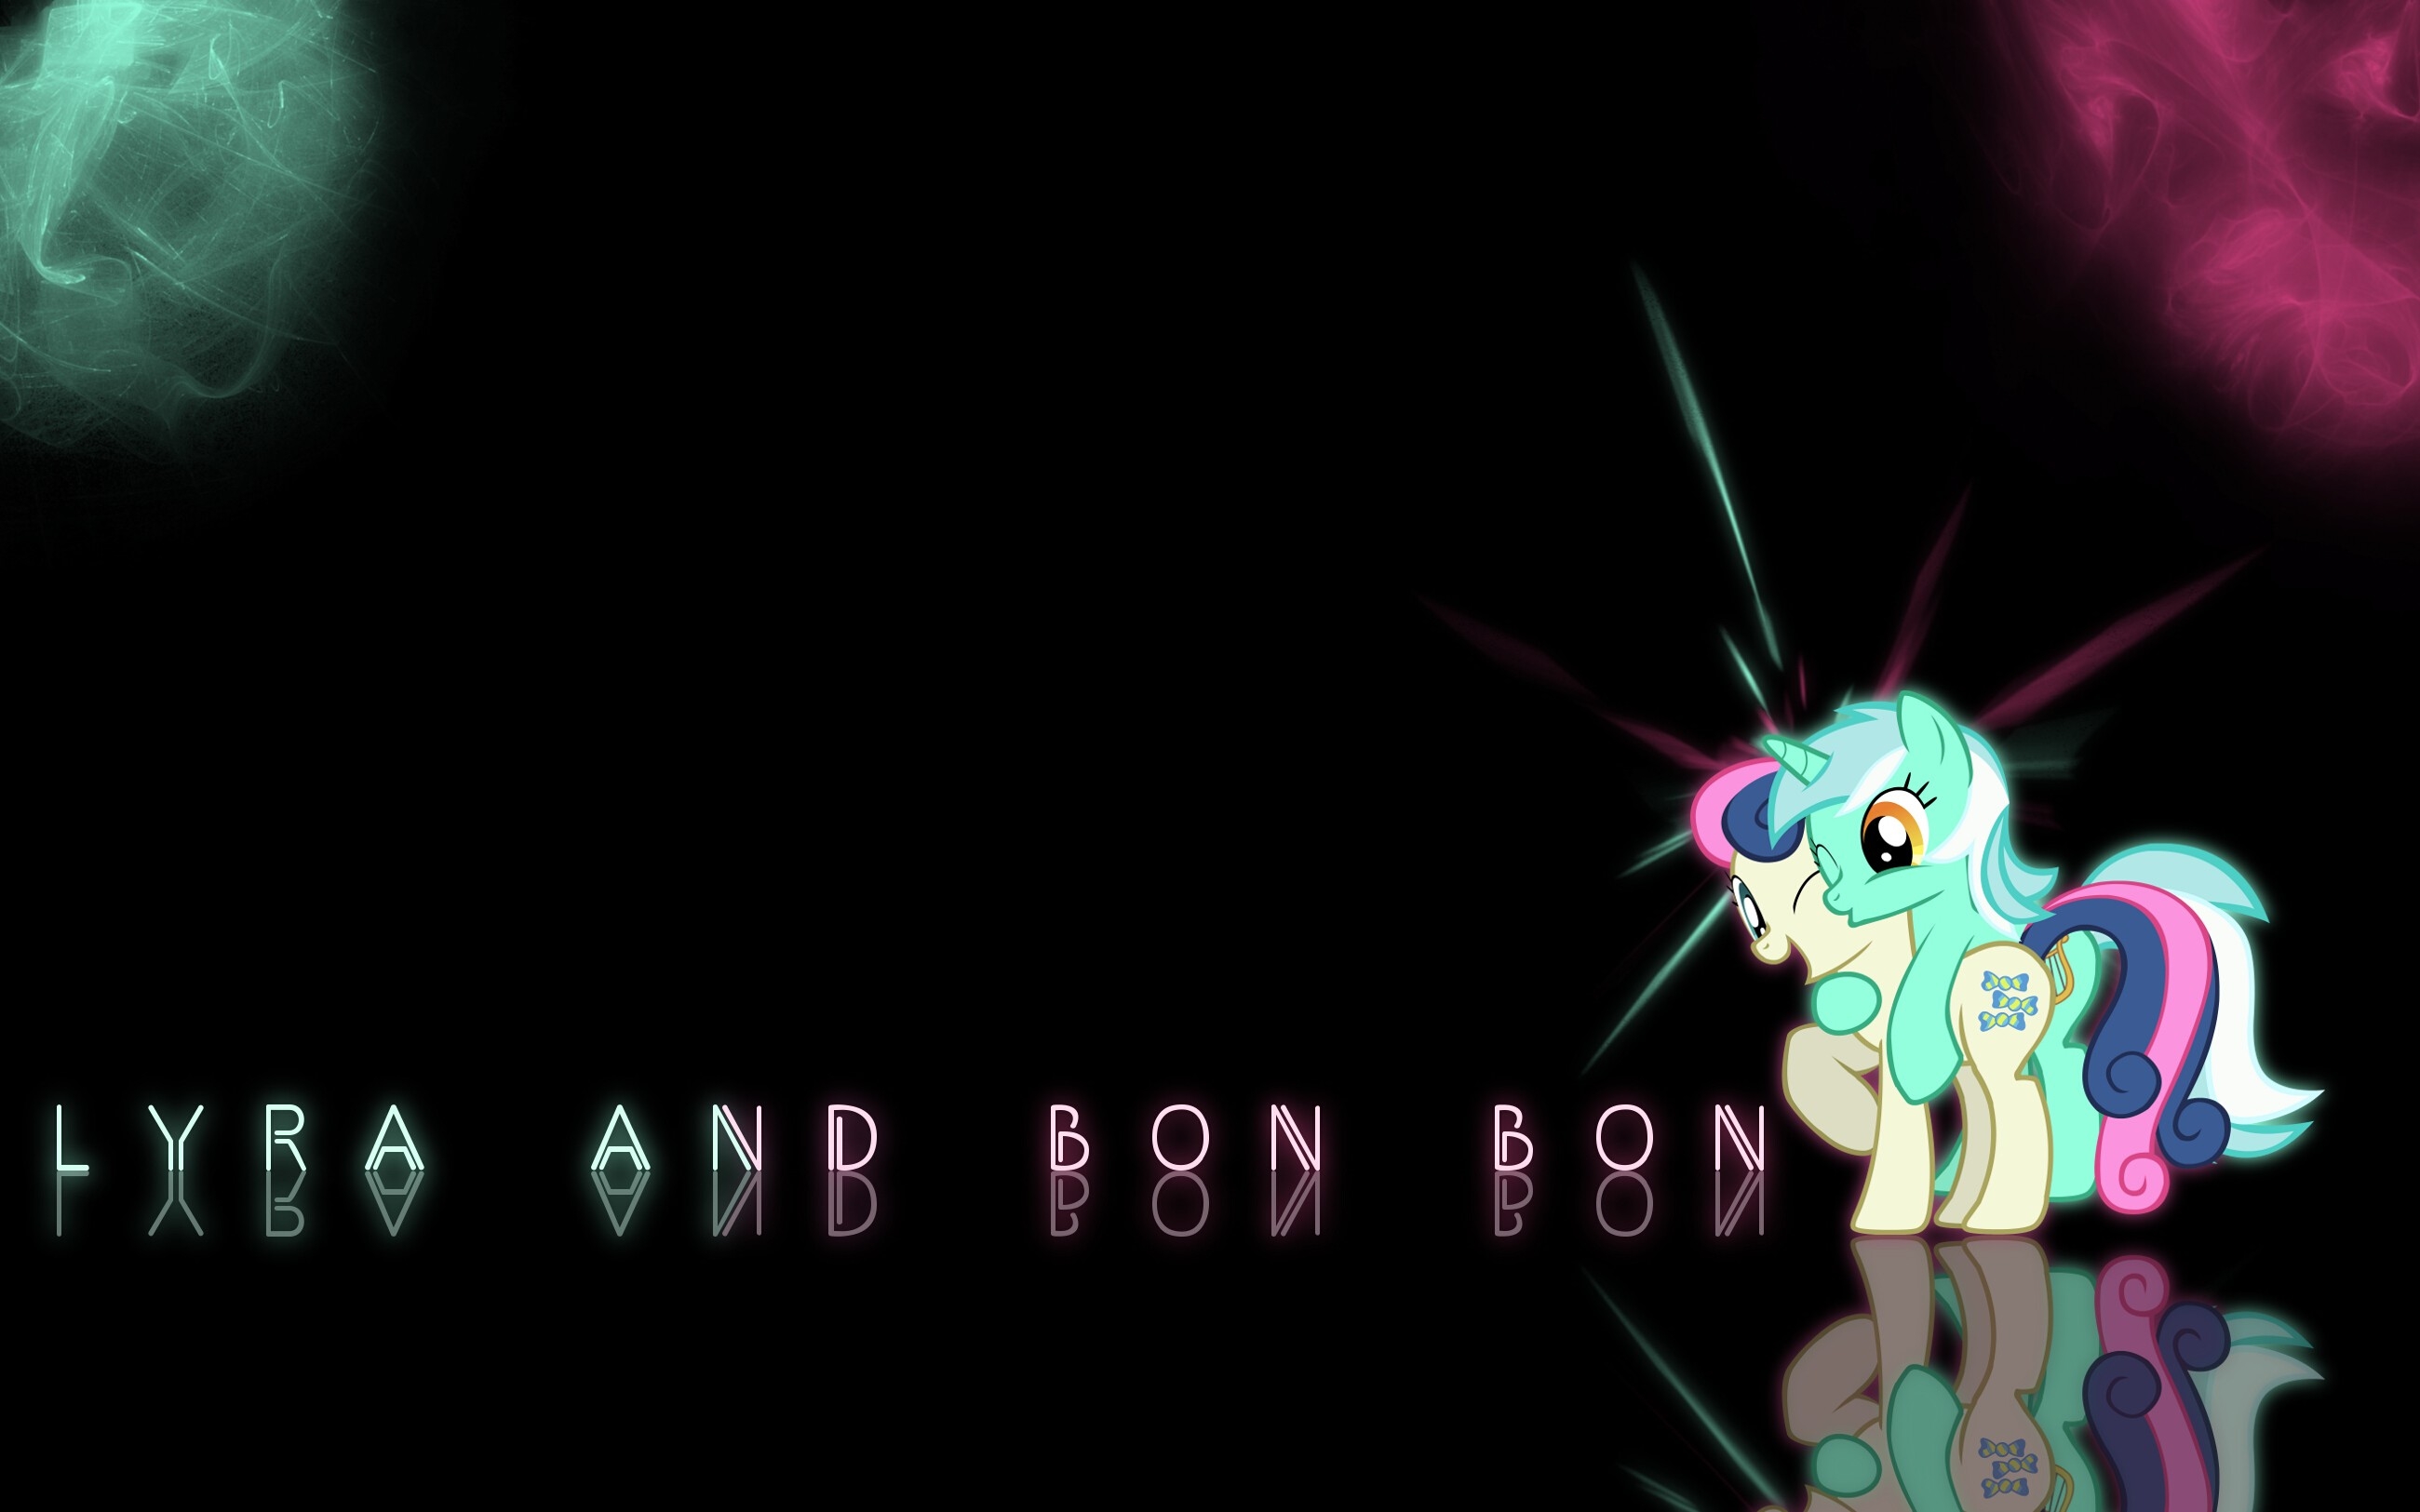 bon bon wallpaper,graphic design,text,cartoon,light,darkness